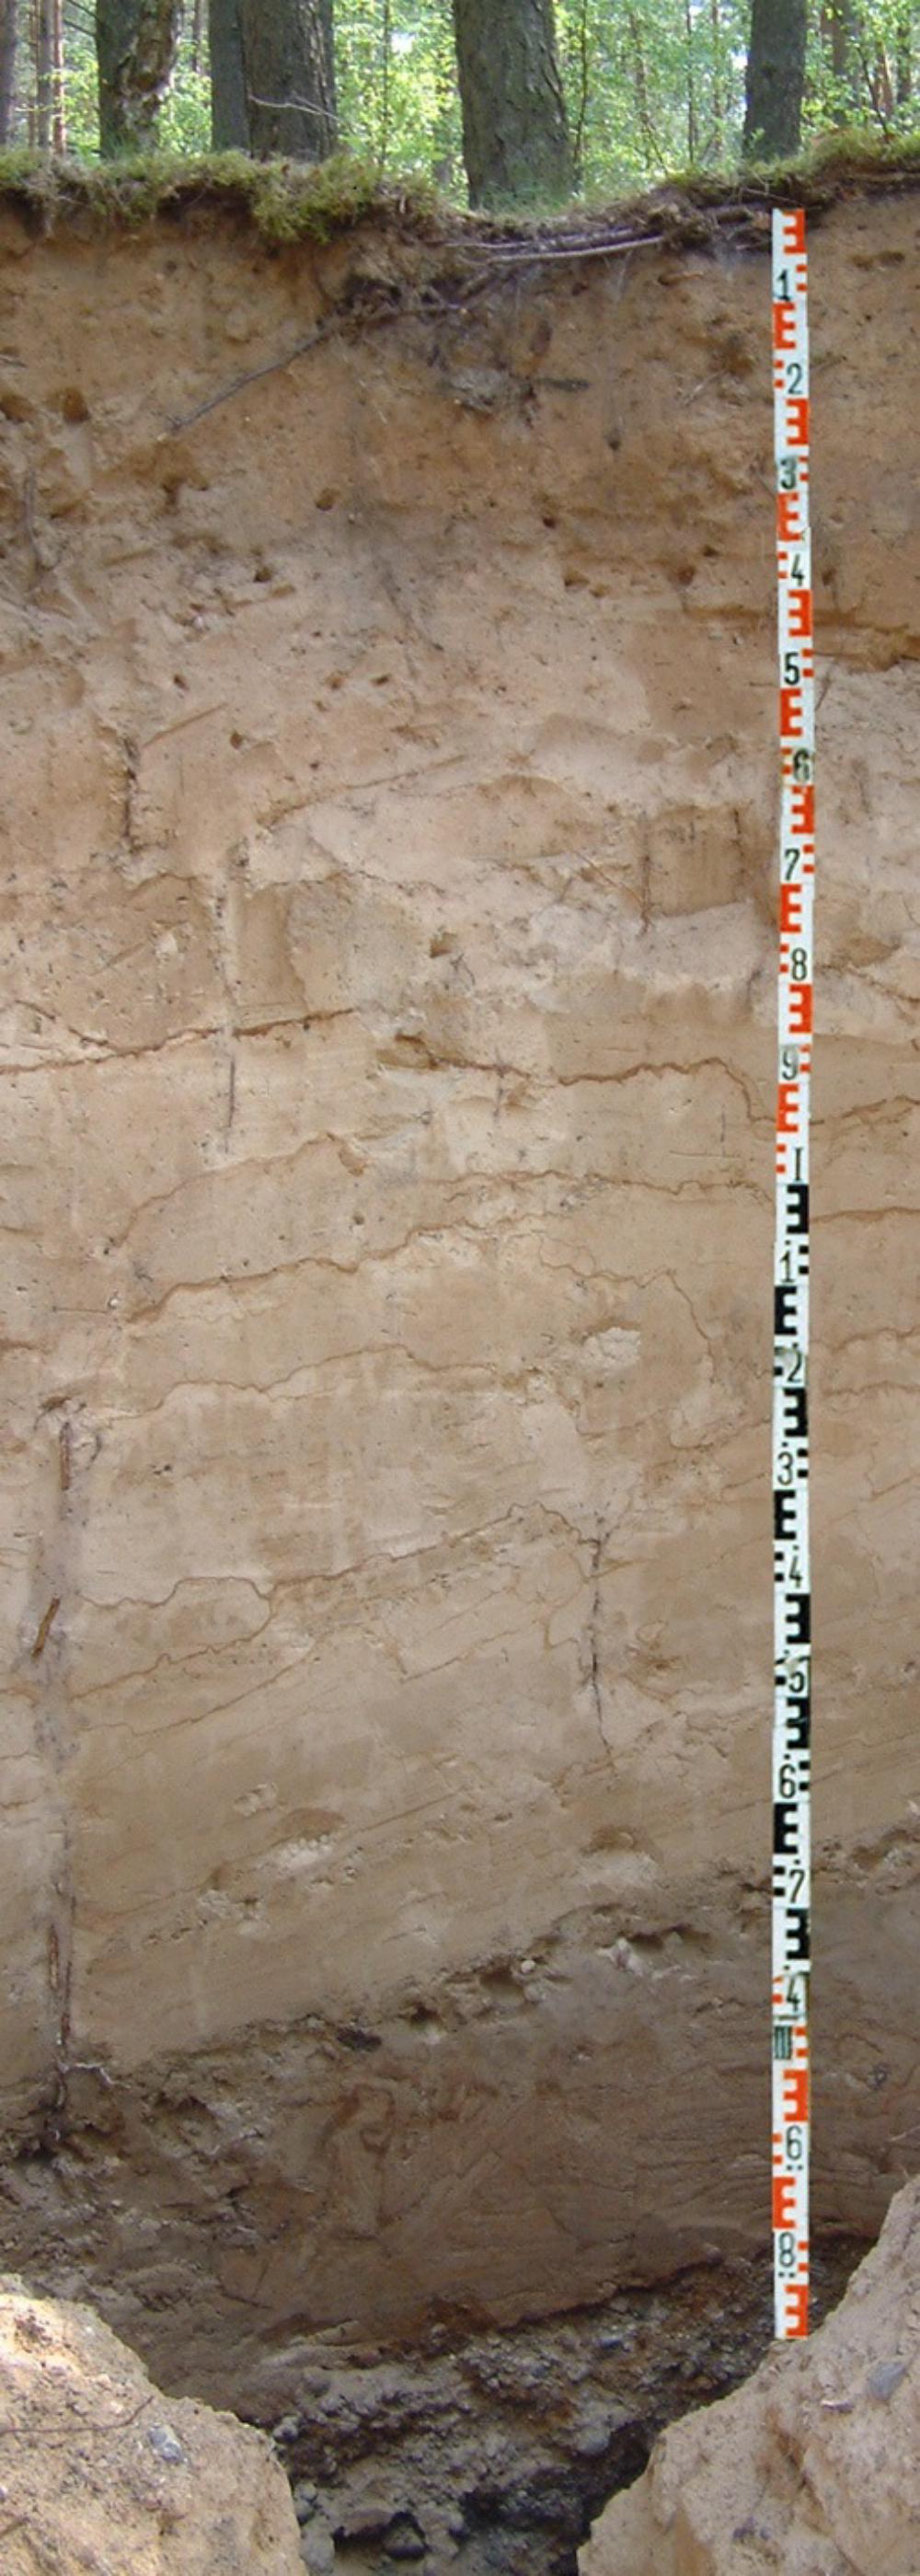 Abb. 34: Grobe Kiese aus dem Kern des Schweinebuchtenberg-Kames unter einer feineren periglazialen Decke (vermutlich mit äolischem Sand), oben die Reste einer gekappten Braunerde